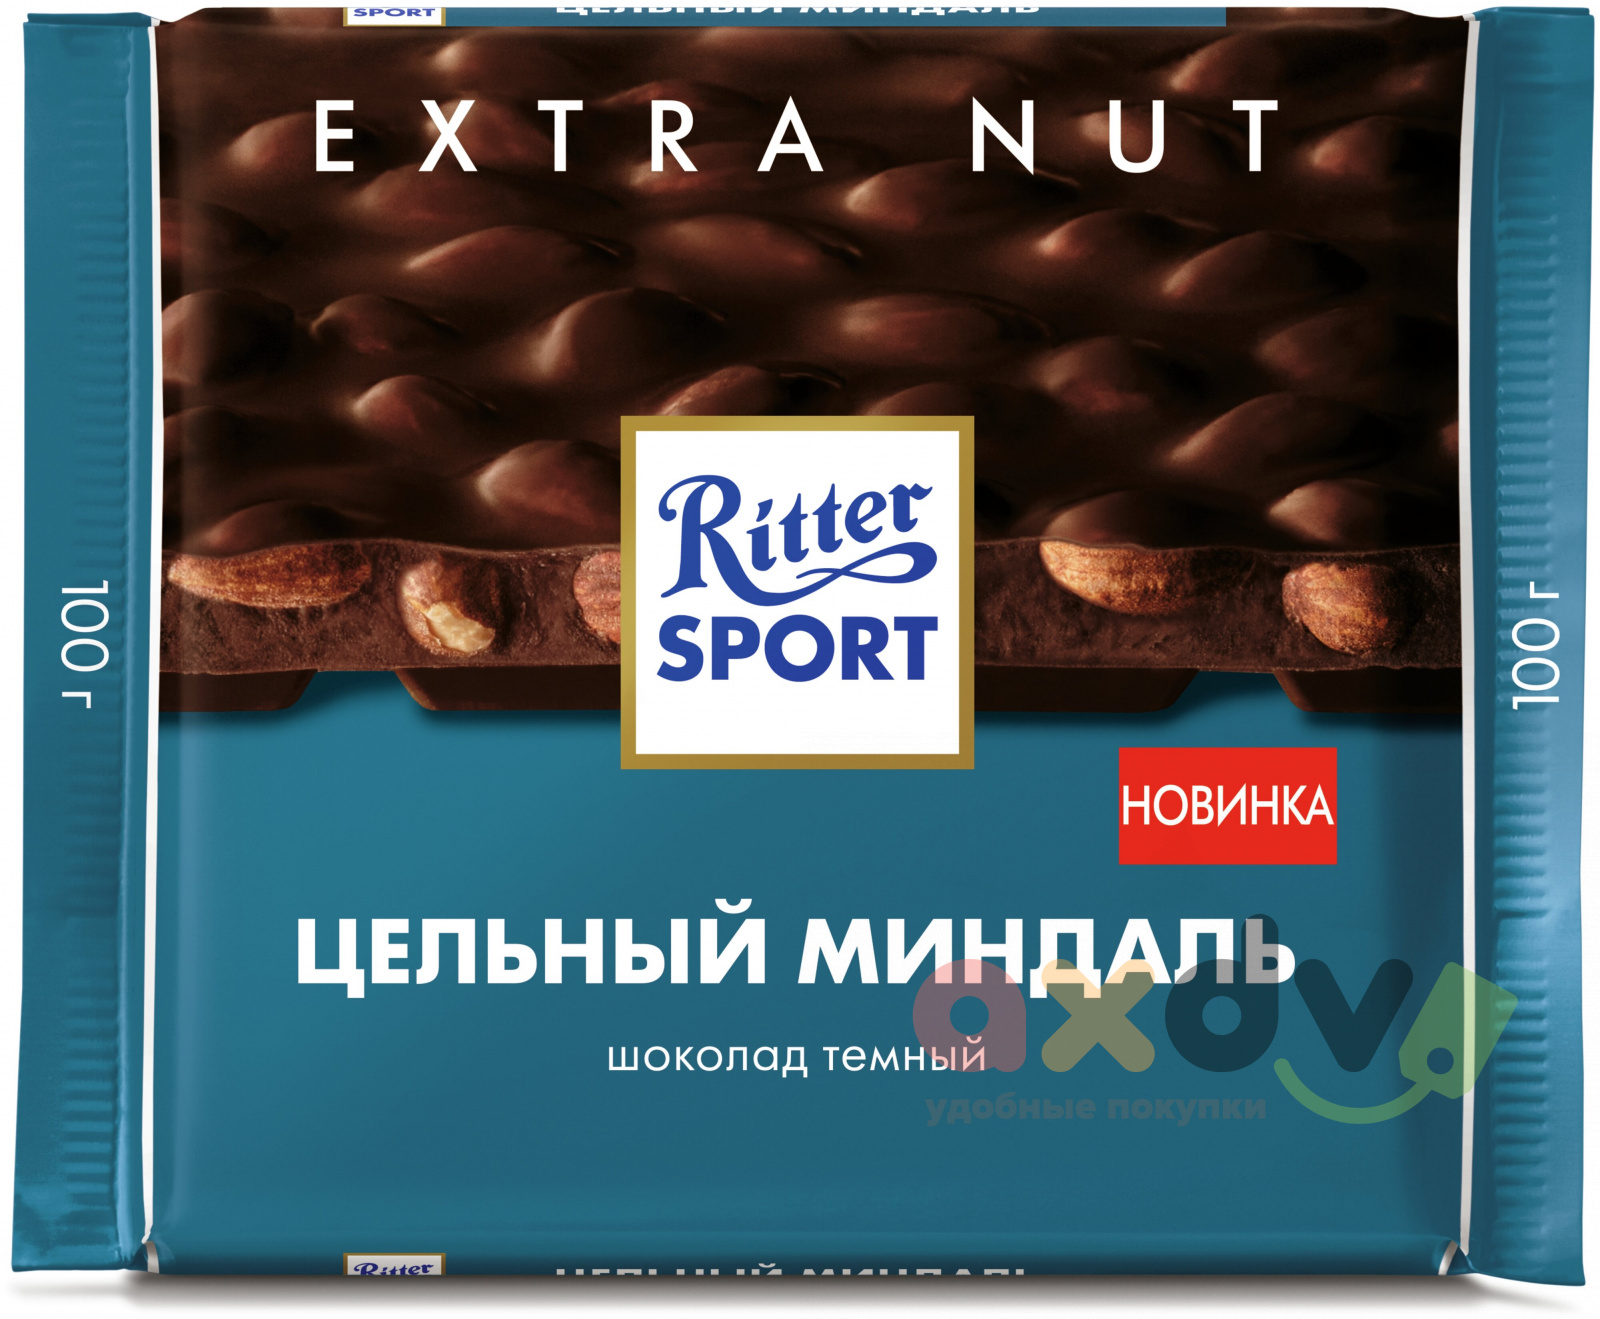 Шоколадка ритер. Шоколад Ritter Sport Extra nut. Шоколад Ritter Sport 100гр цельный миндаль темный. Риттер спорт темный с миндалем. Риттер спорт шоколад темный с миндалем.